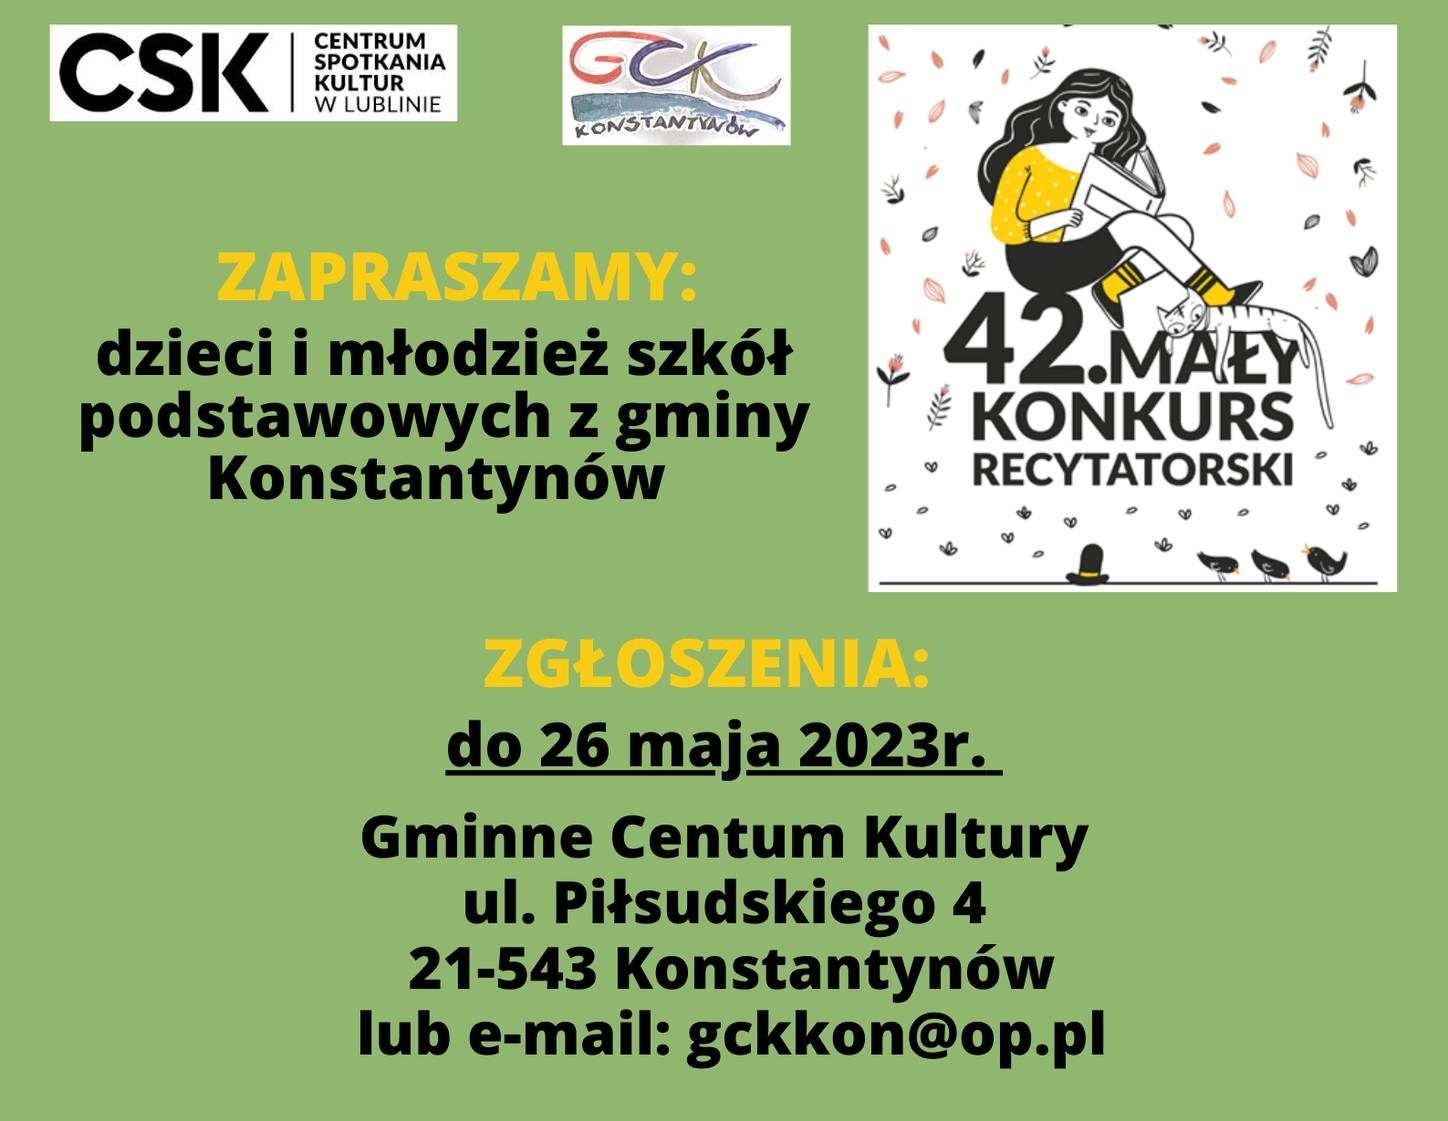 You are currently viewing Zapraszamy dzieci i młodzież z gminy Konstantynów do udziału w 42. Małym Konkursie Recytatorskim.